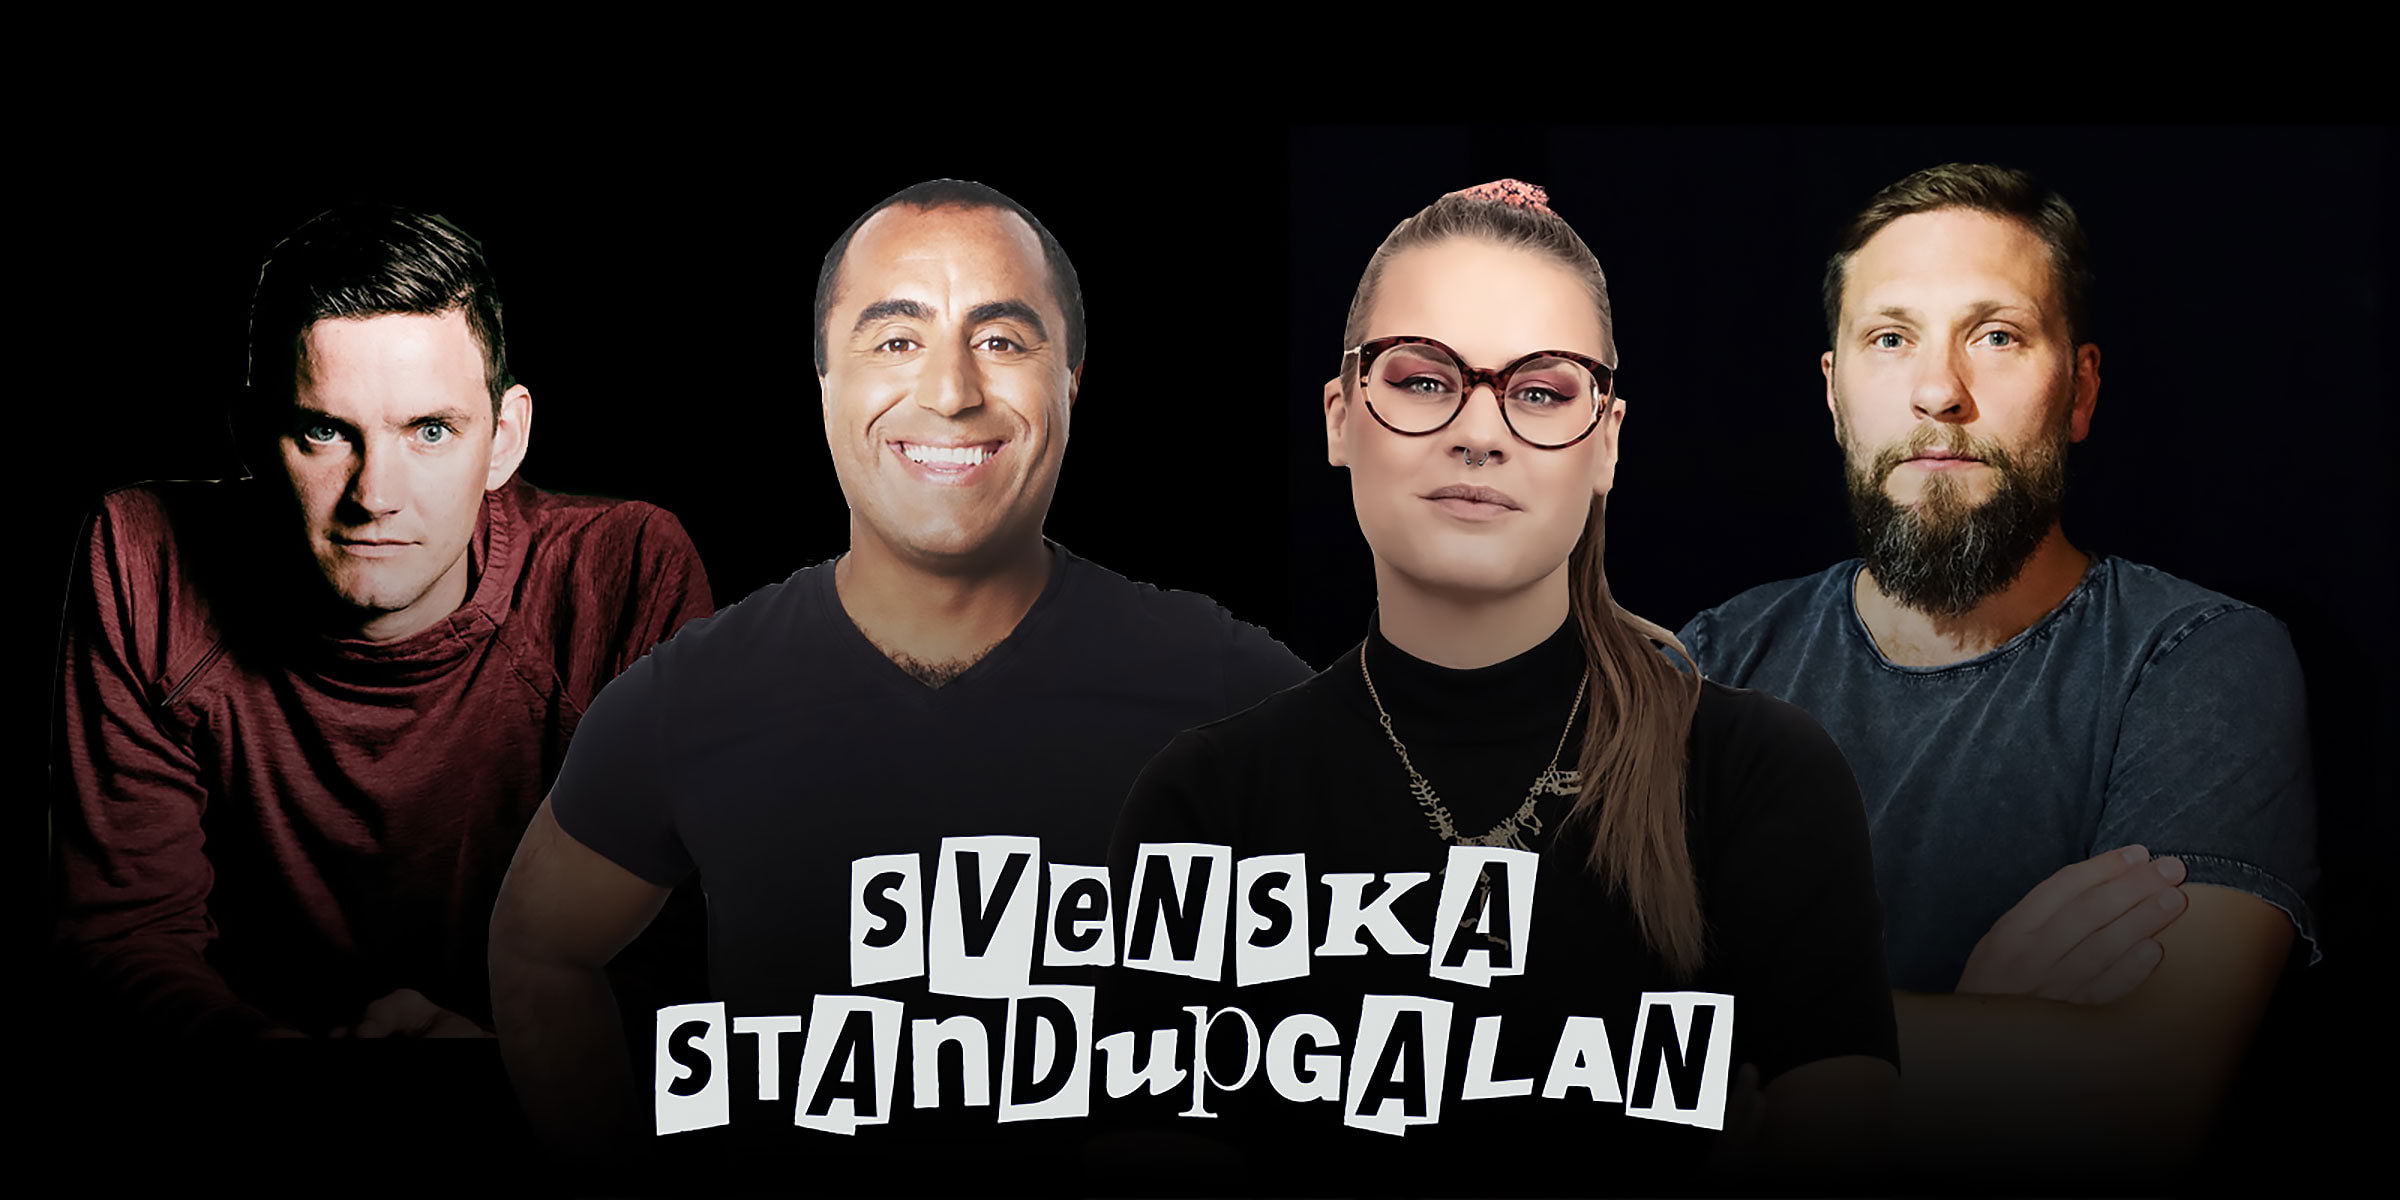 Dags för Svenska Standupgalan 2020